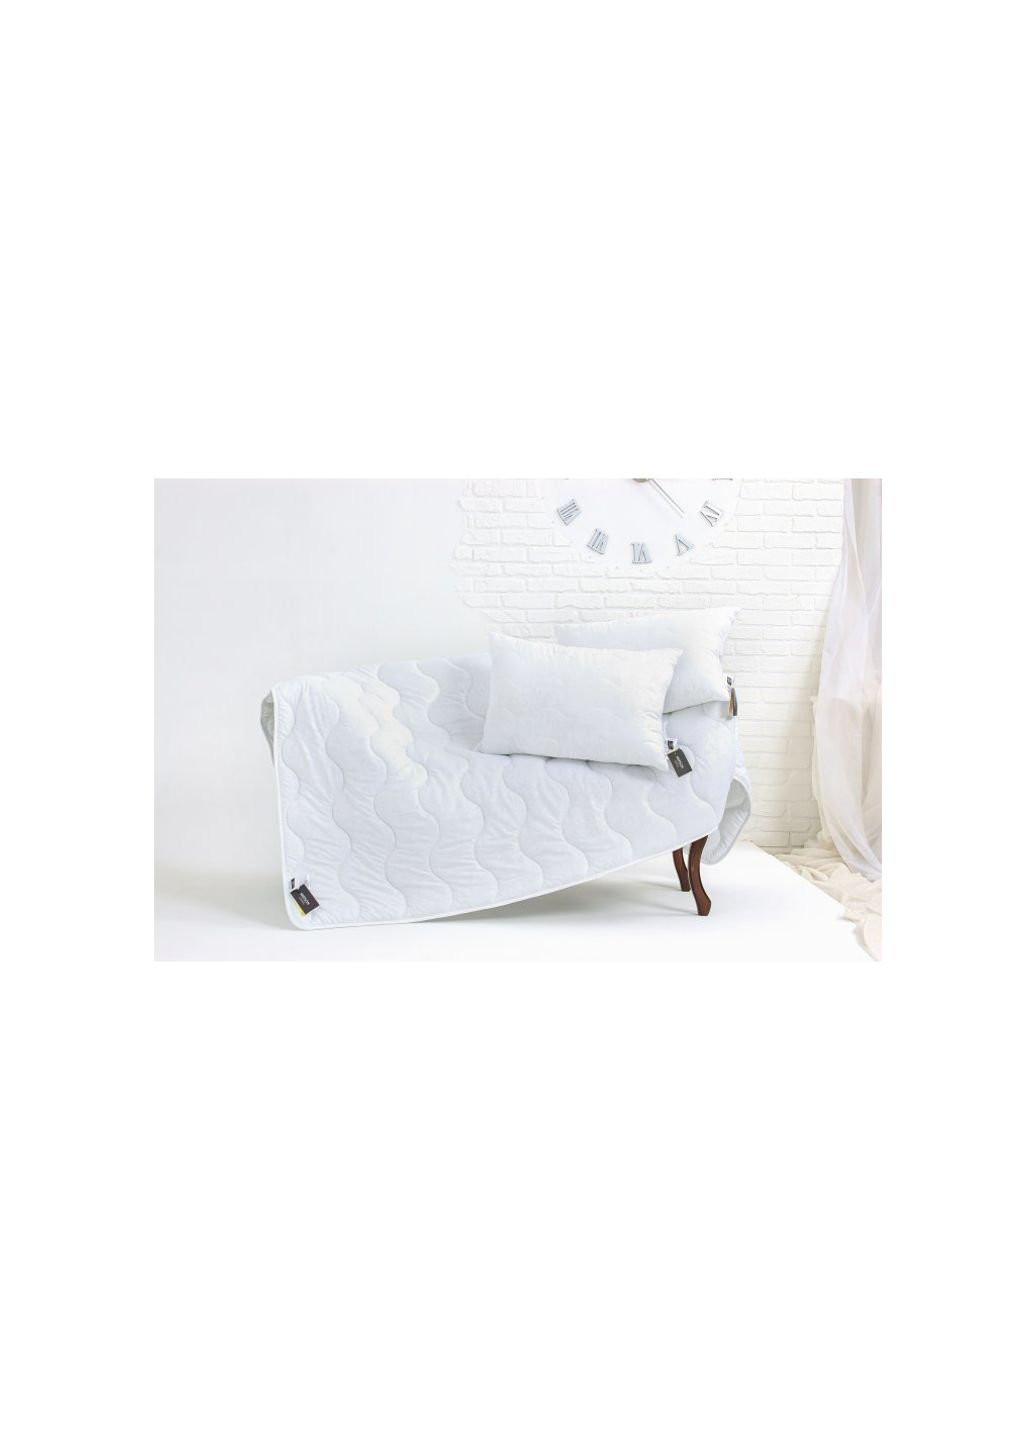 Одеяло MirSon антиалергенное EcoSilk 1630 Eco Light White 110х140 (2200002647427) No Brand (254014481)